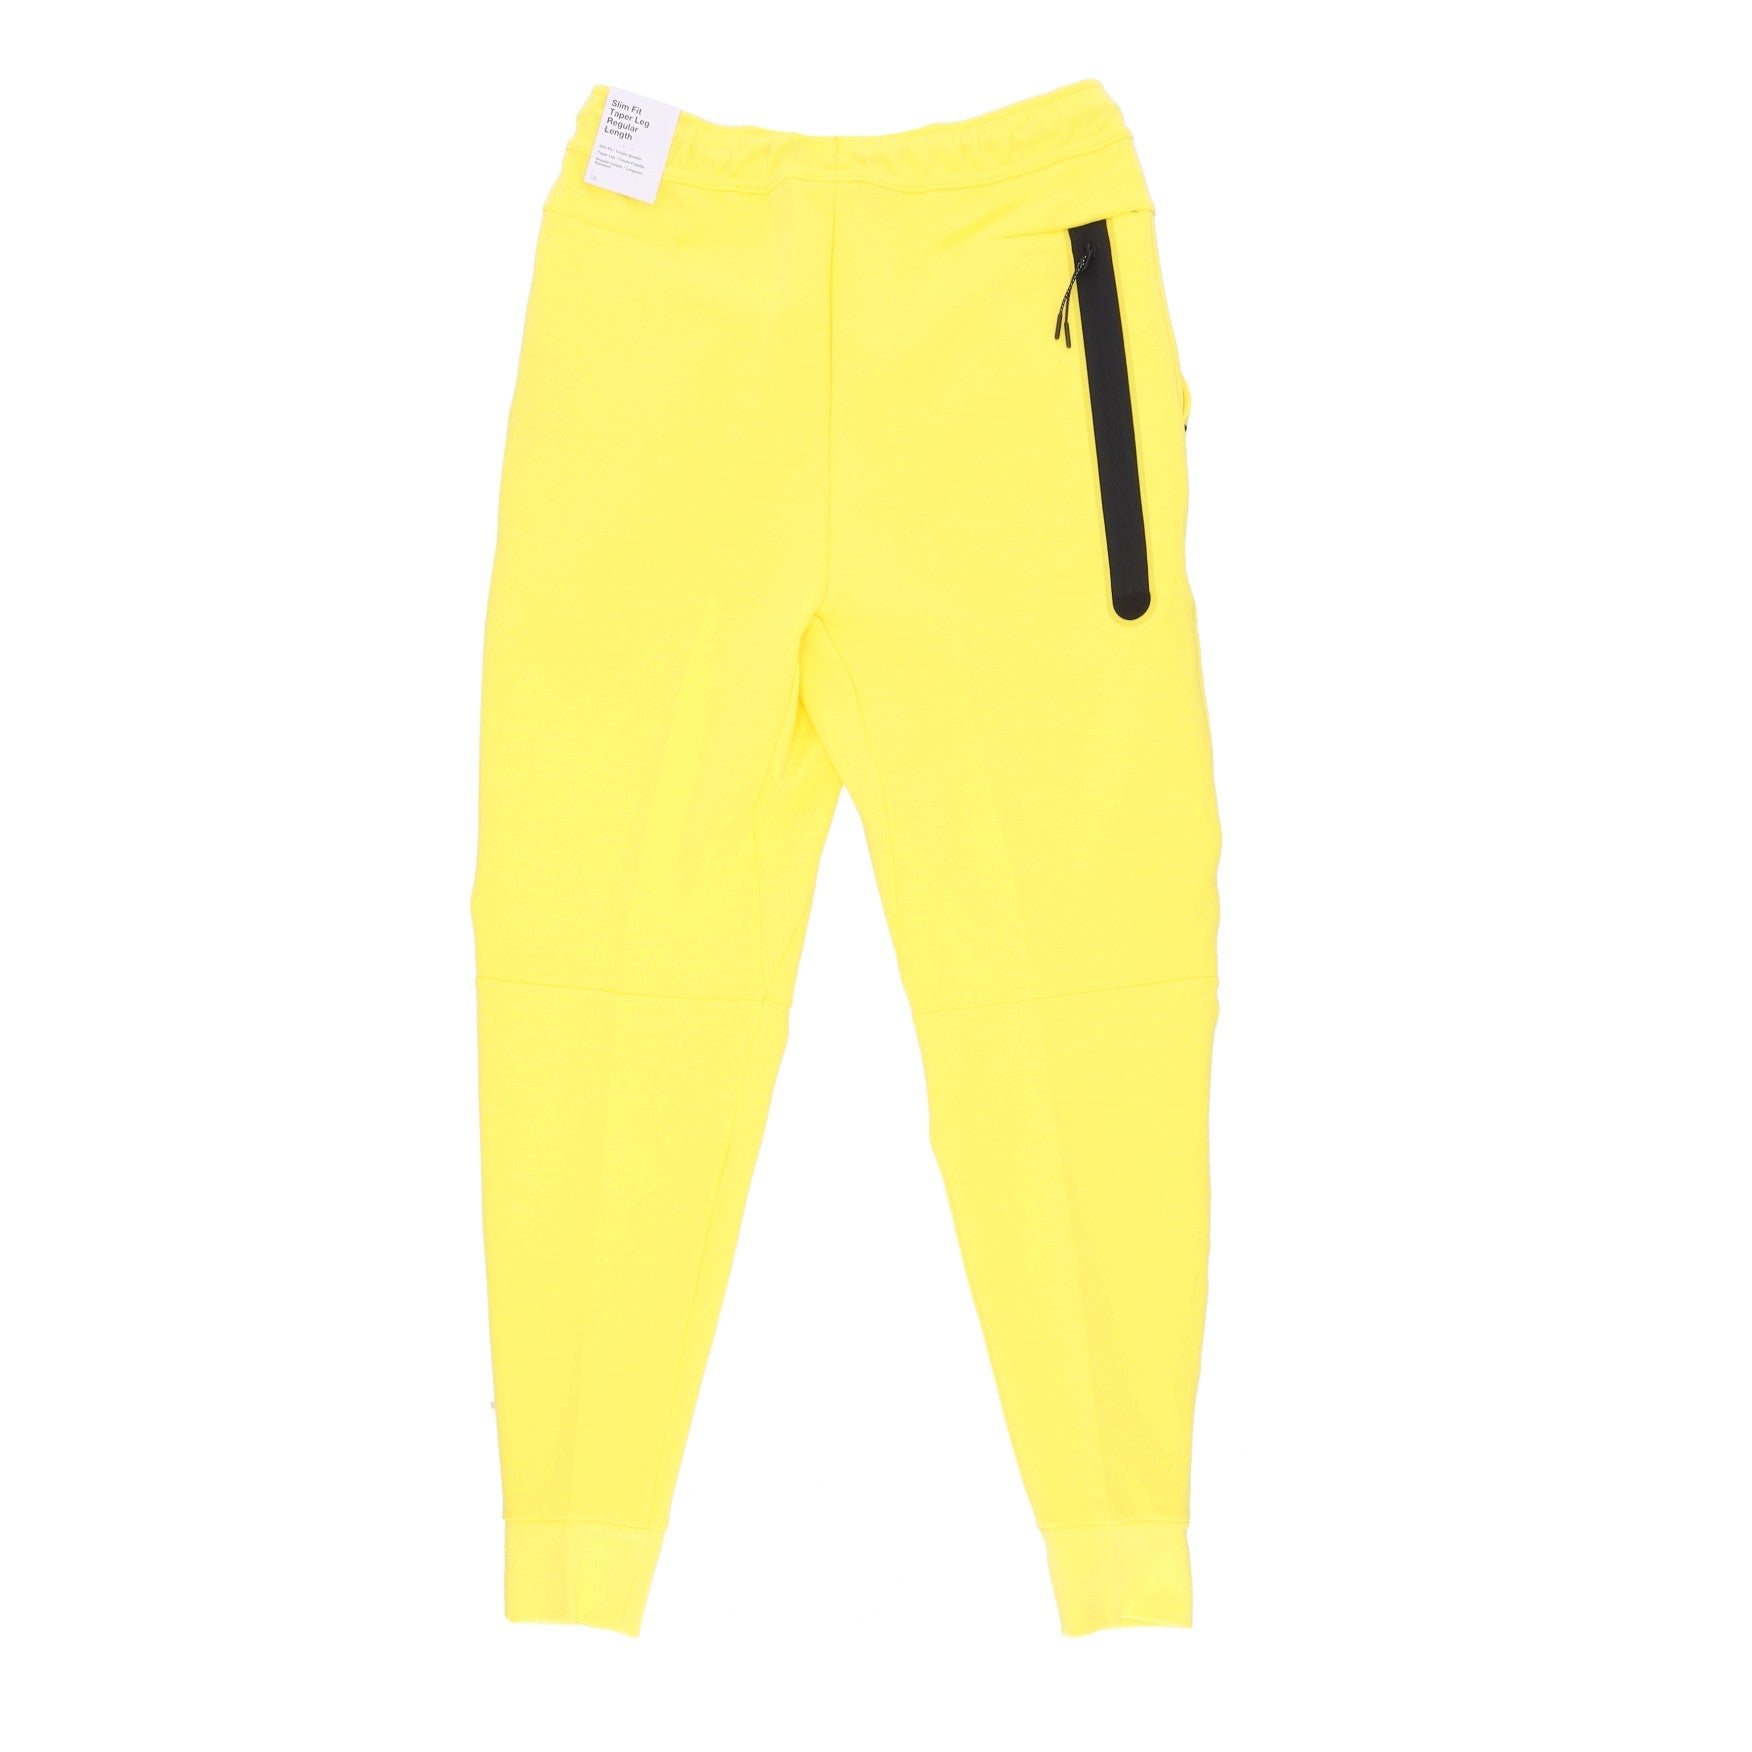 Lightweight Tracksuit Pants Men Sportswear Tech Fleece Pant Yellow Strike/black